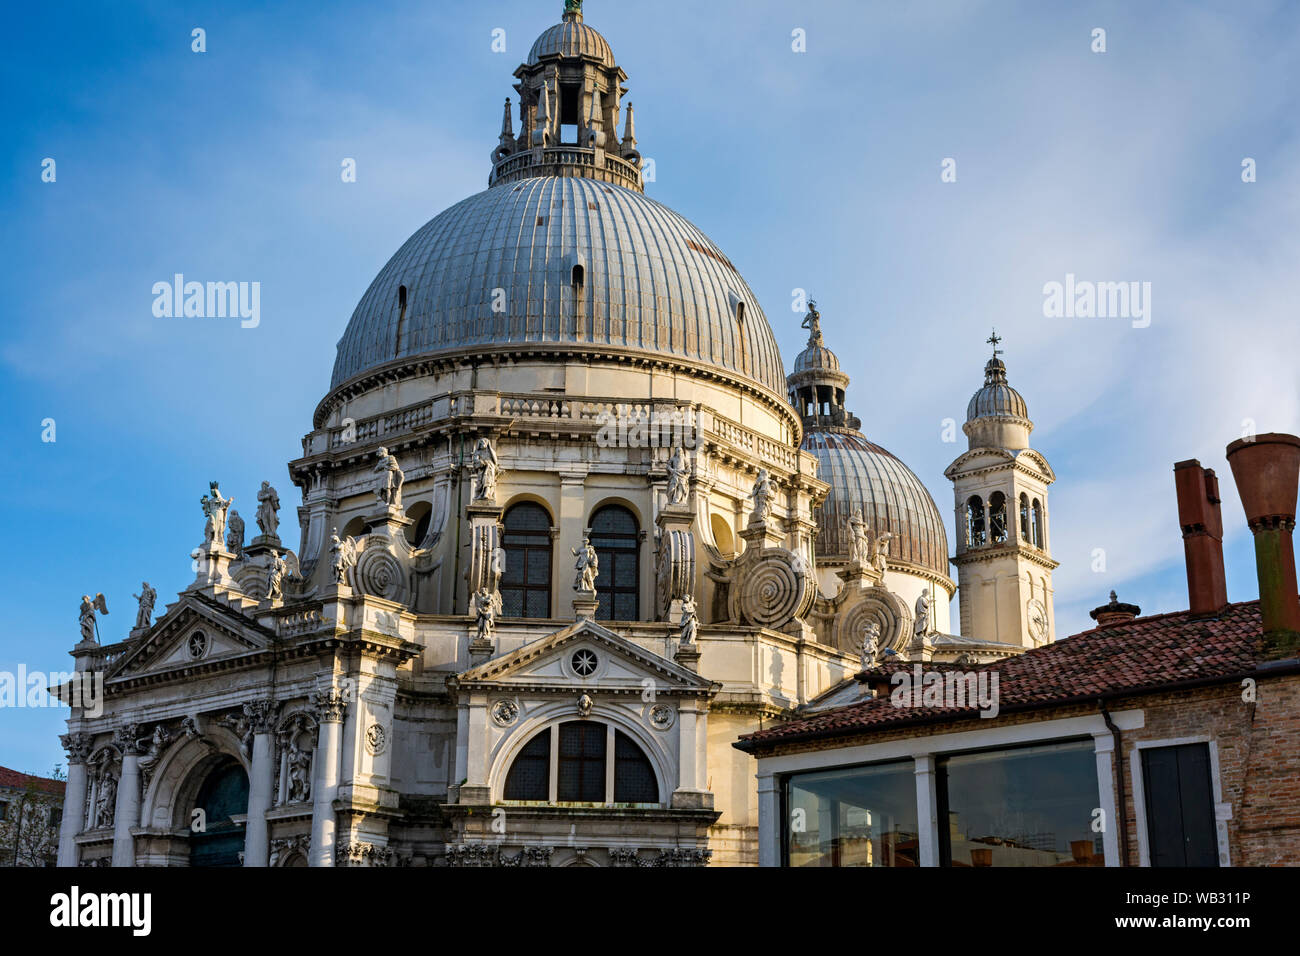 The domes of the Basilica di Santa Maria della Salute, Venice, Italy Stock Photo